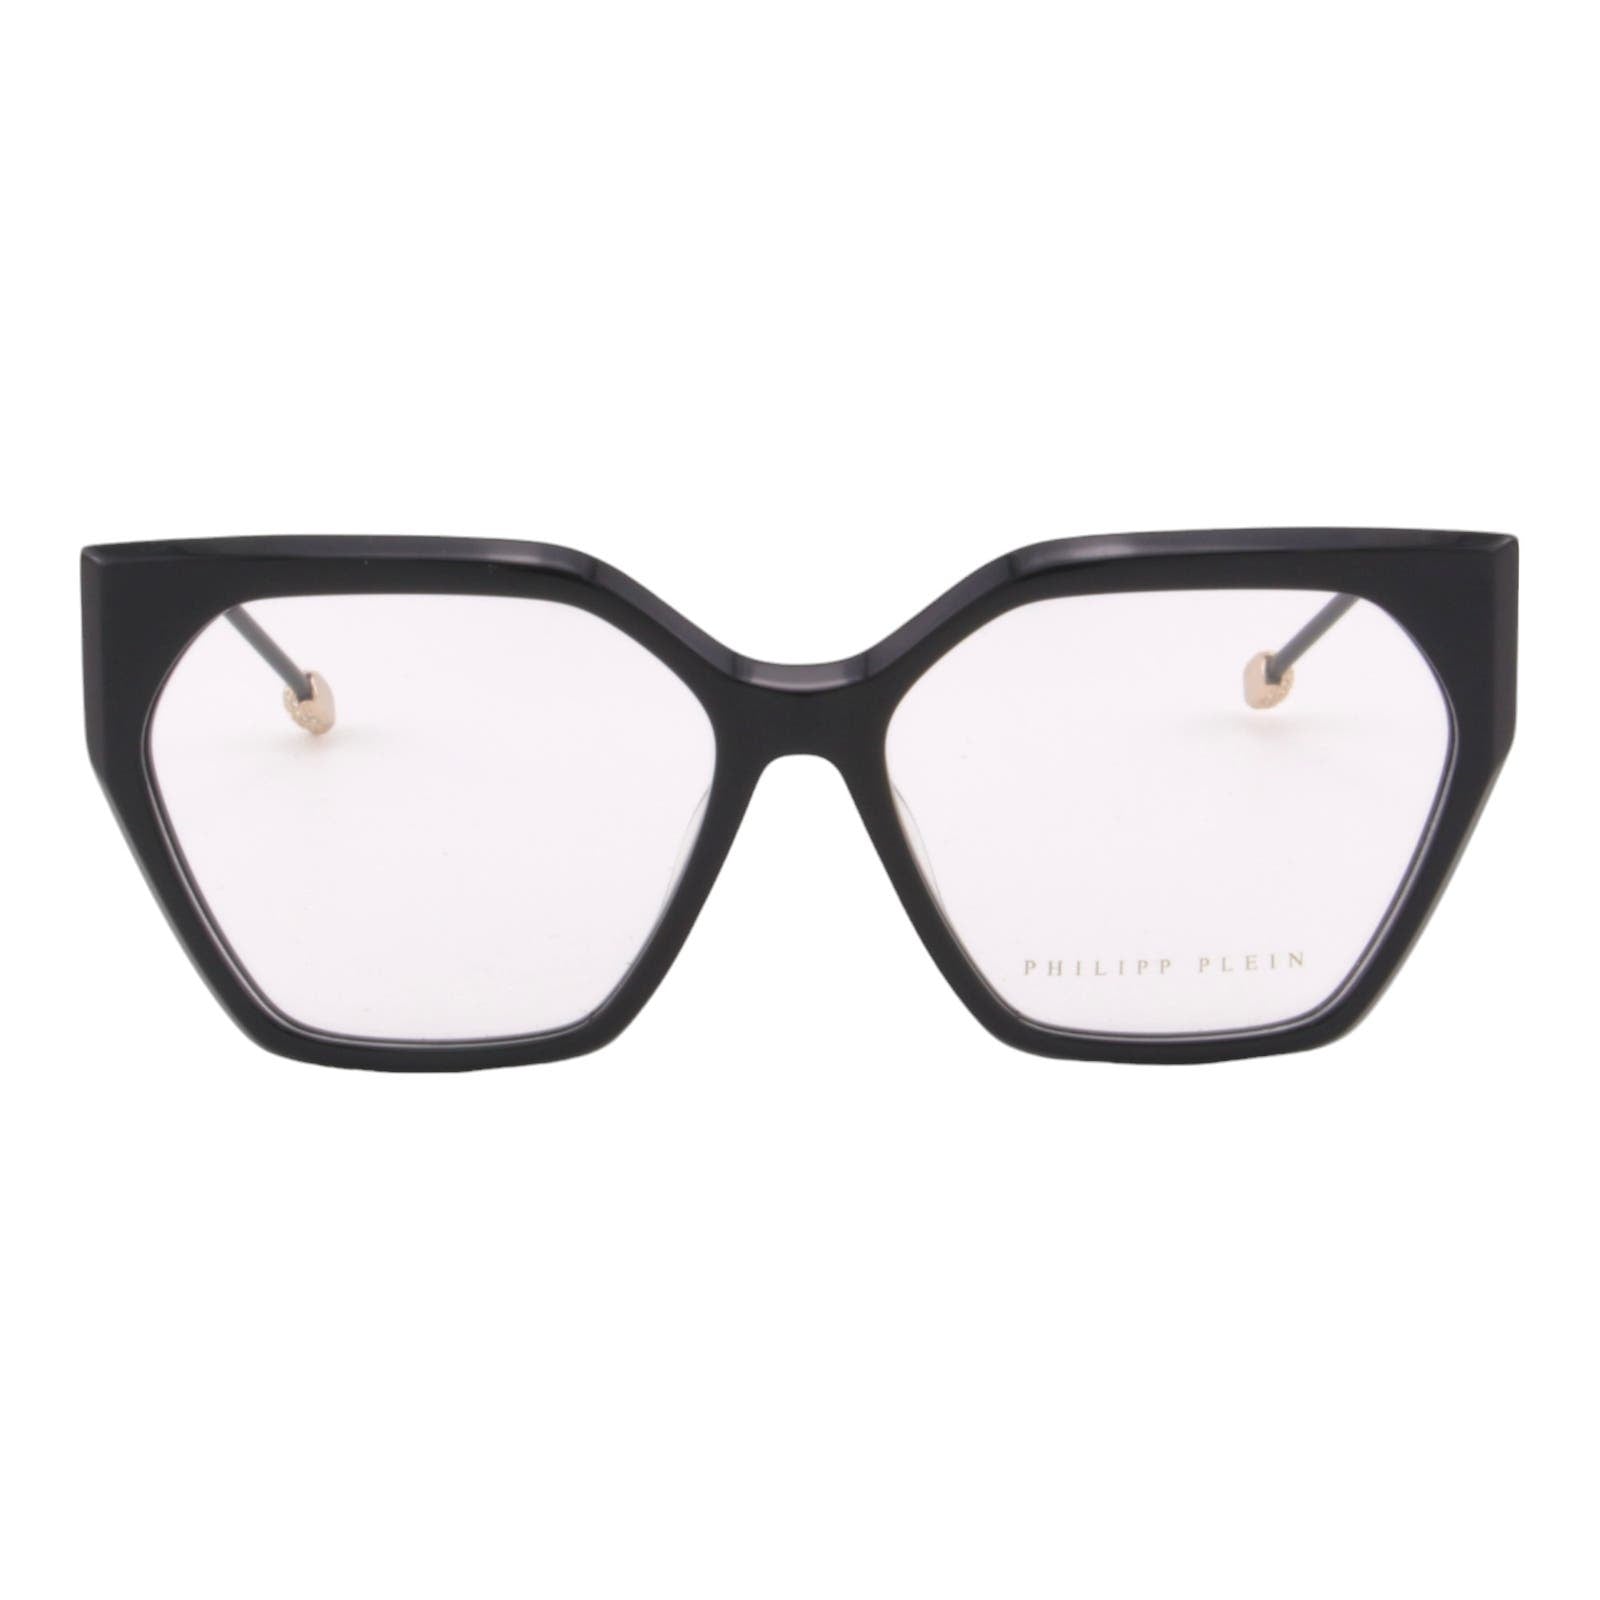 Women Oversized Glasses VPP068S-0700 Cat-Eye Optical Frame